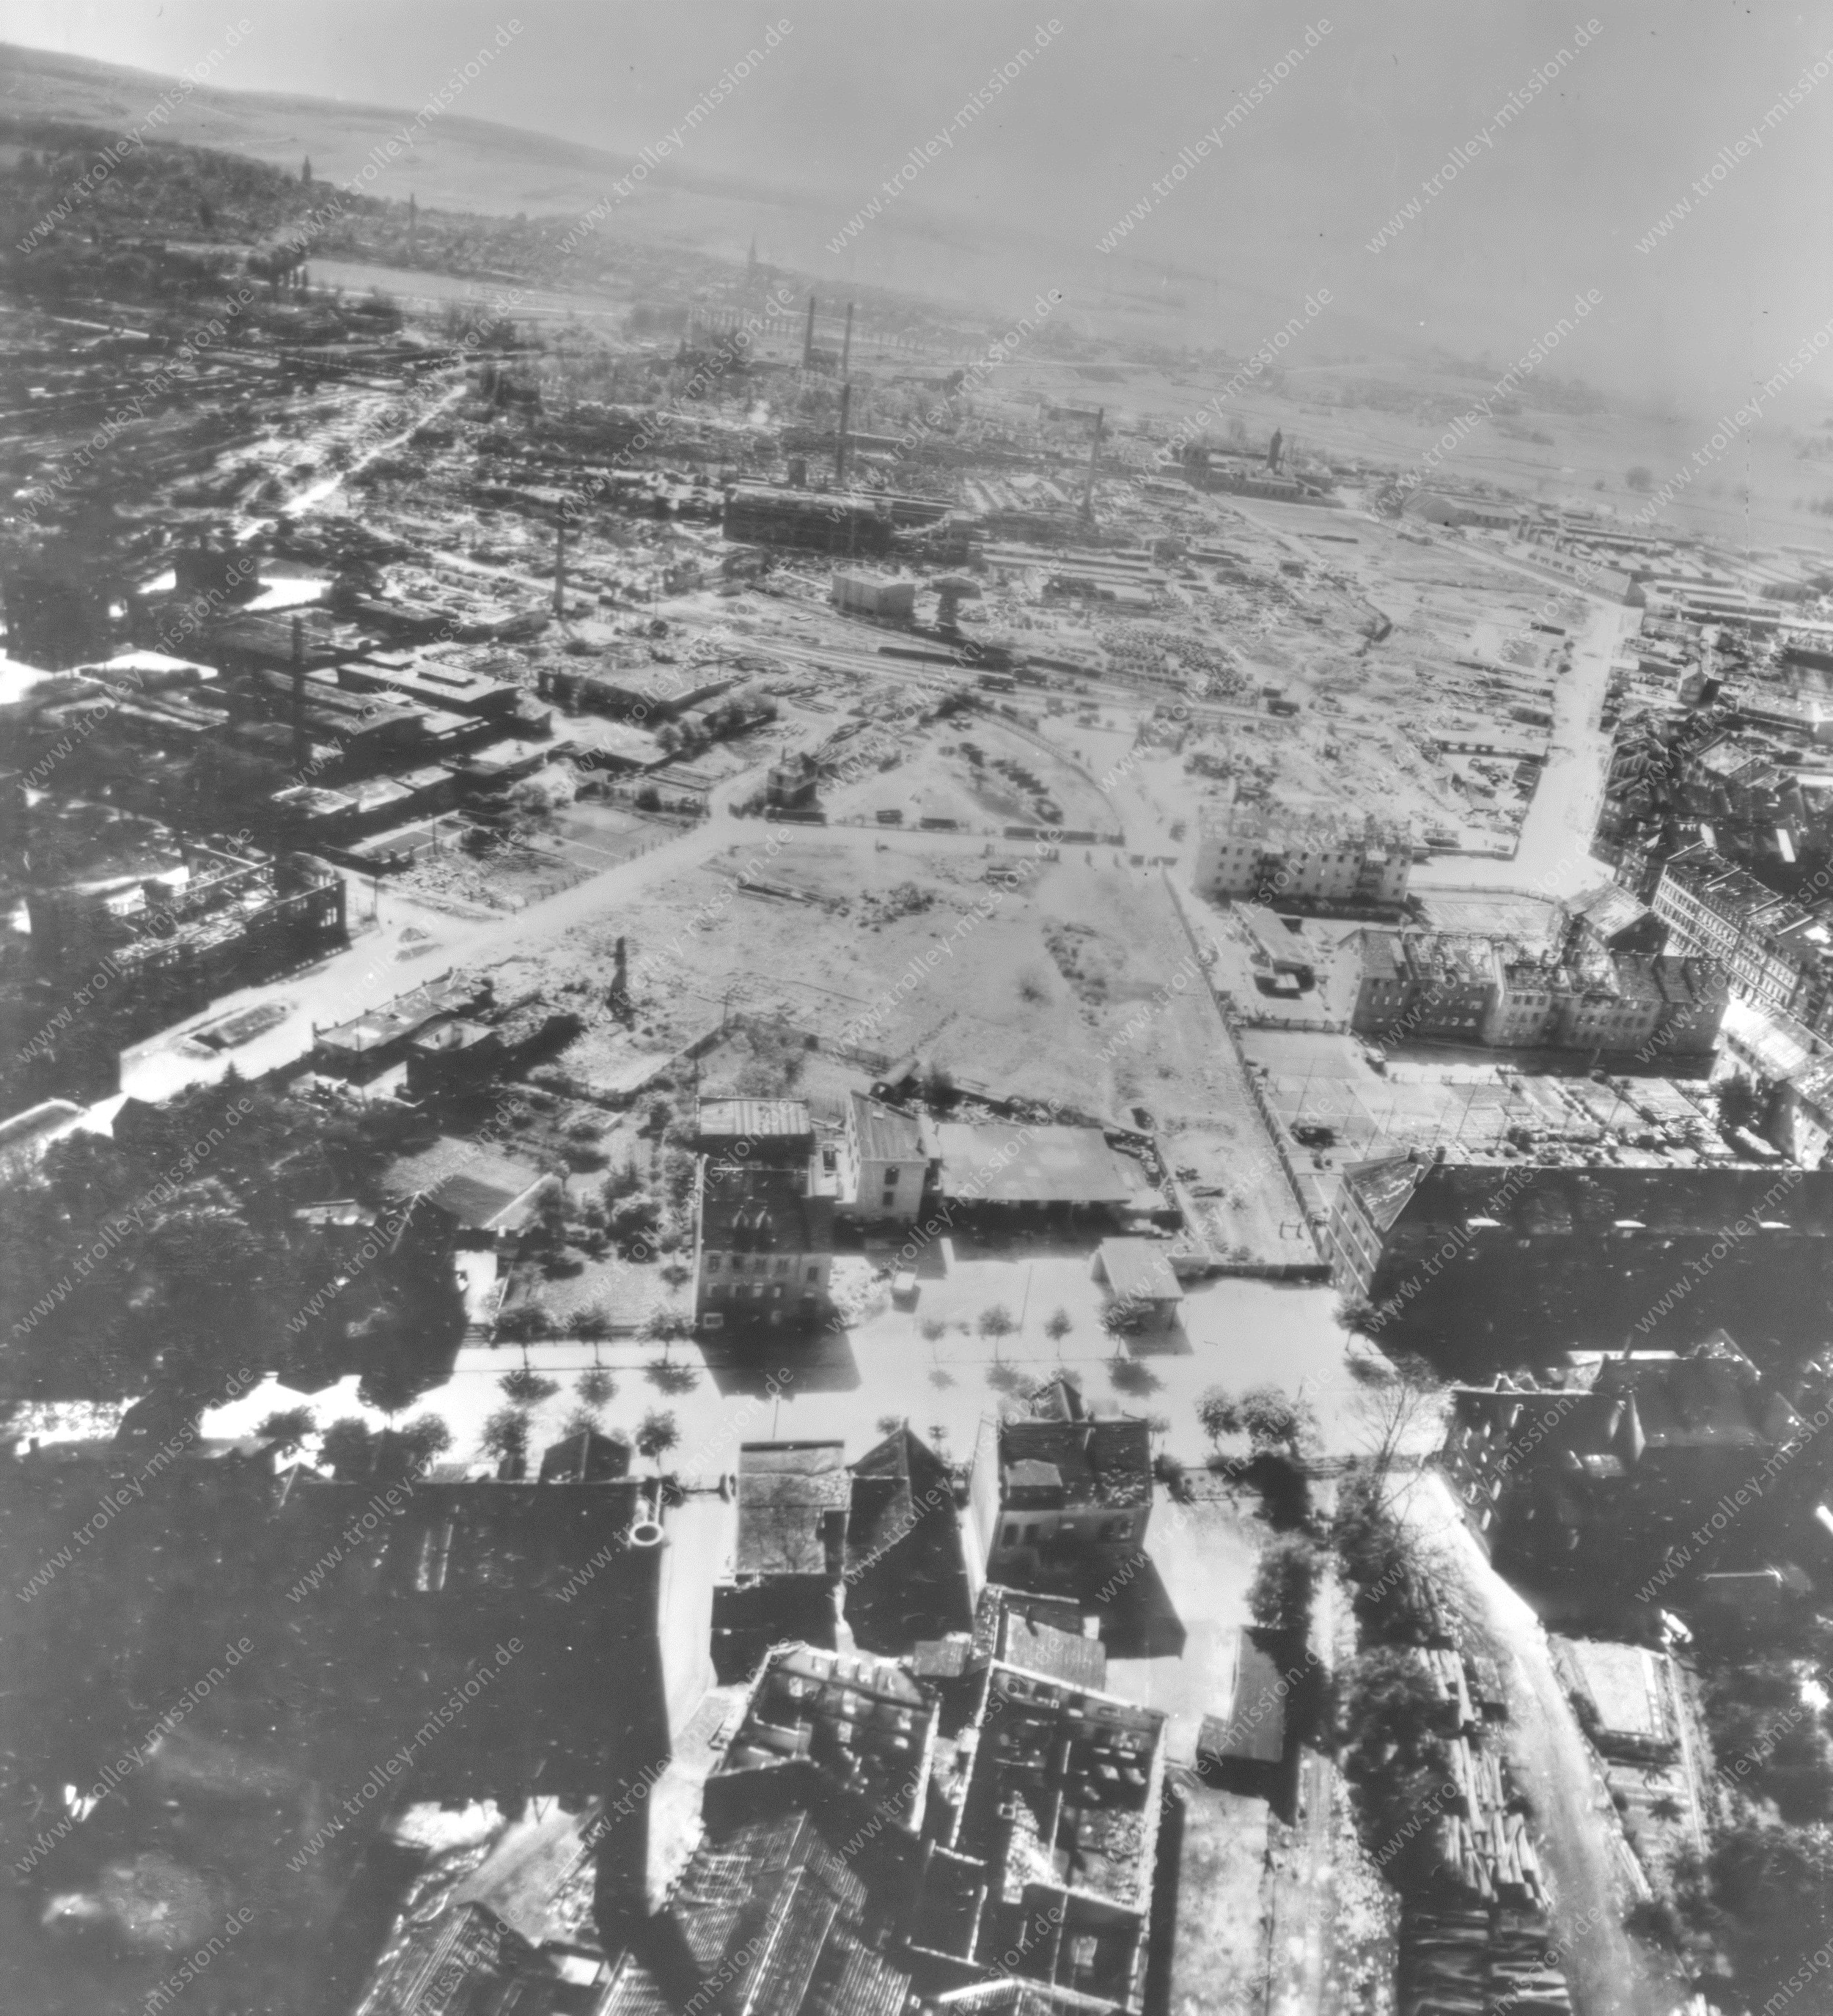 Gewerbegebiet Mitte Hildesheim - Luftbild aus dem Zweiten Weltkrieg